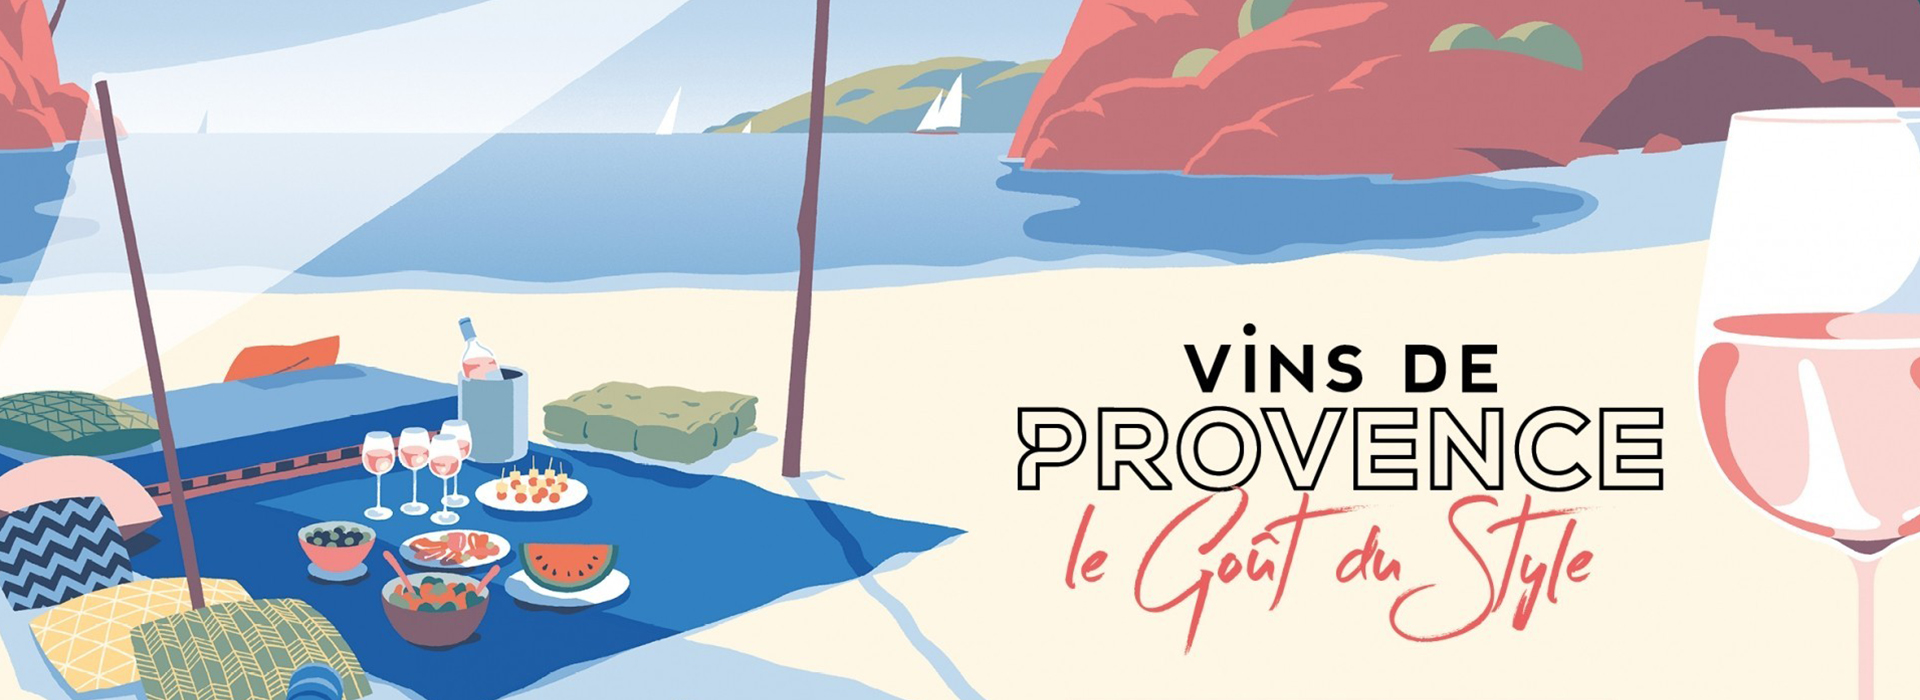 Key visual - Vins de Provence